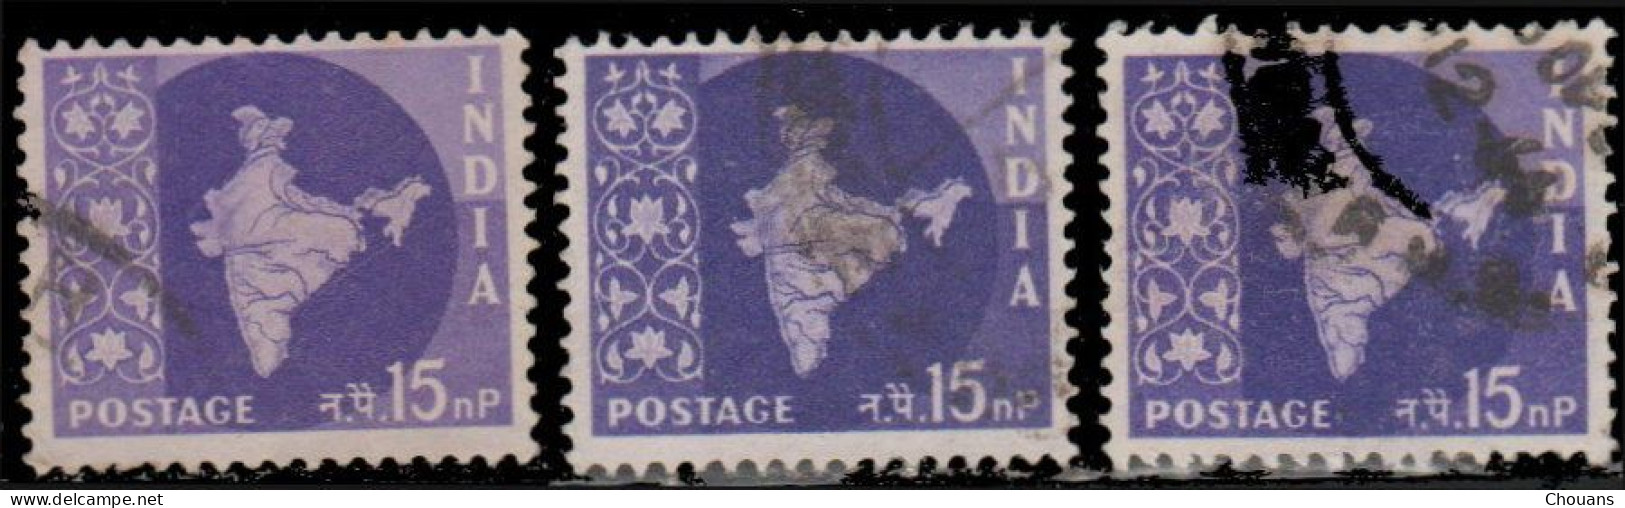 Inde 1957. ~ YT 74/82 - Carte De L'Inde (10 V.) - Usati